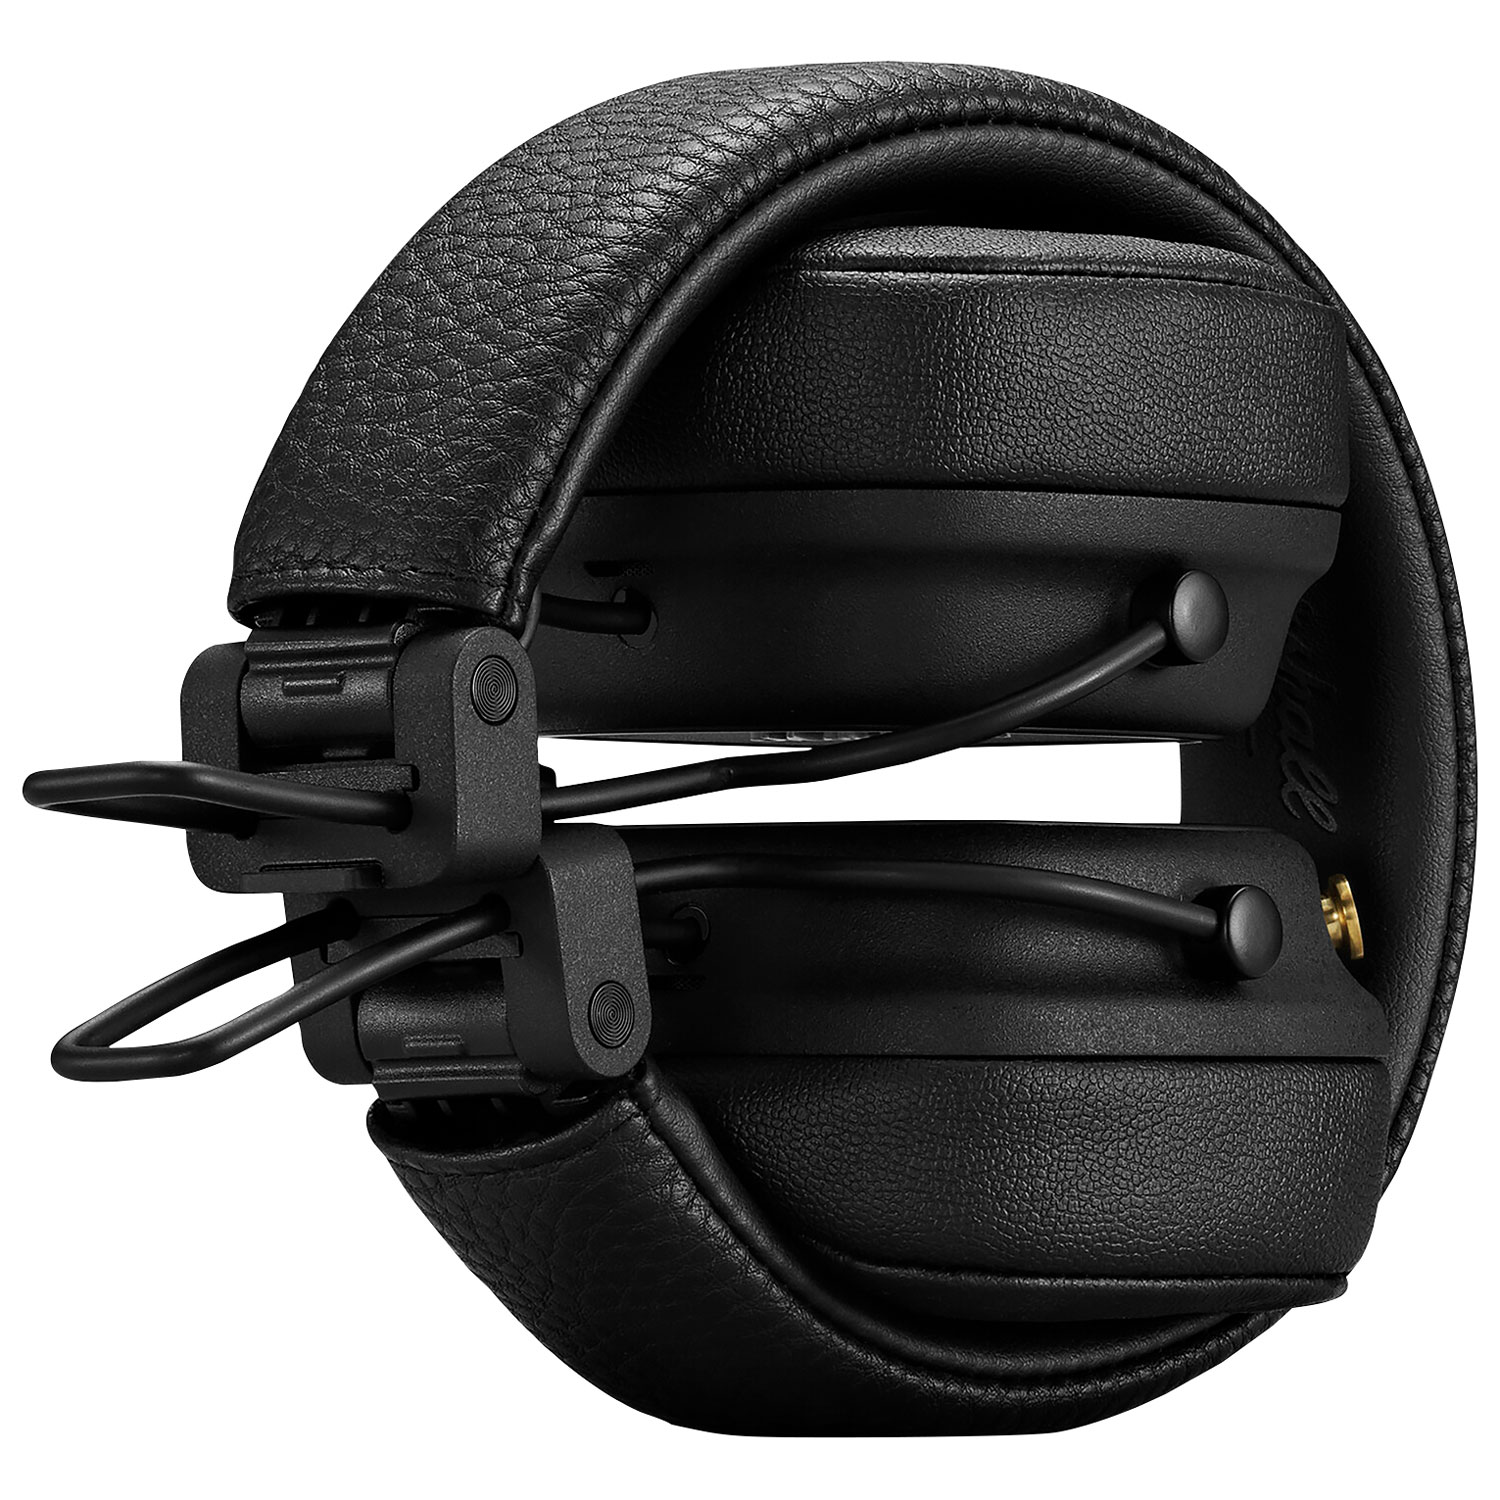 Marshall Major IV On-Ear Bluetooth Headphones - Black | Best